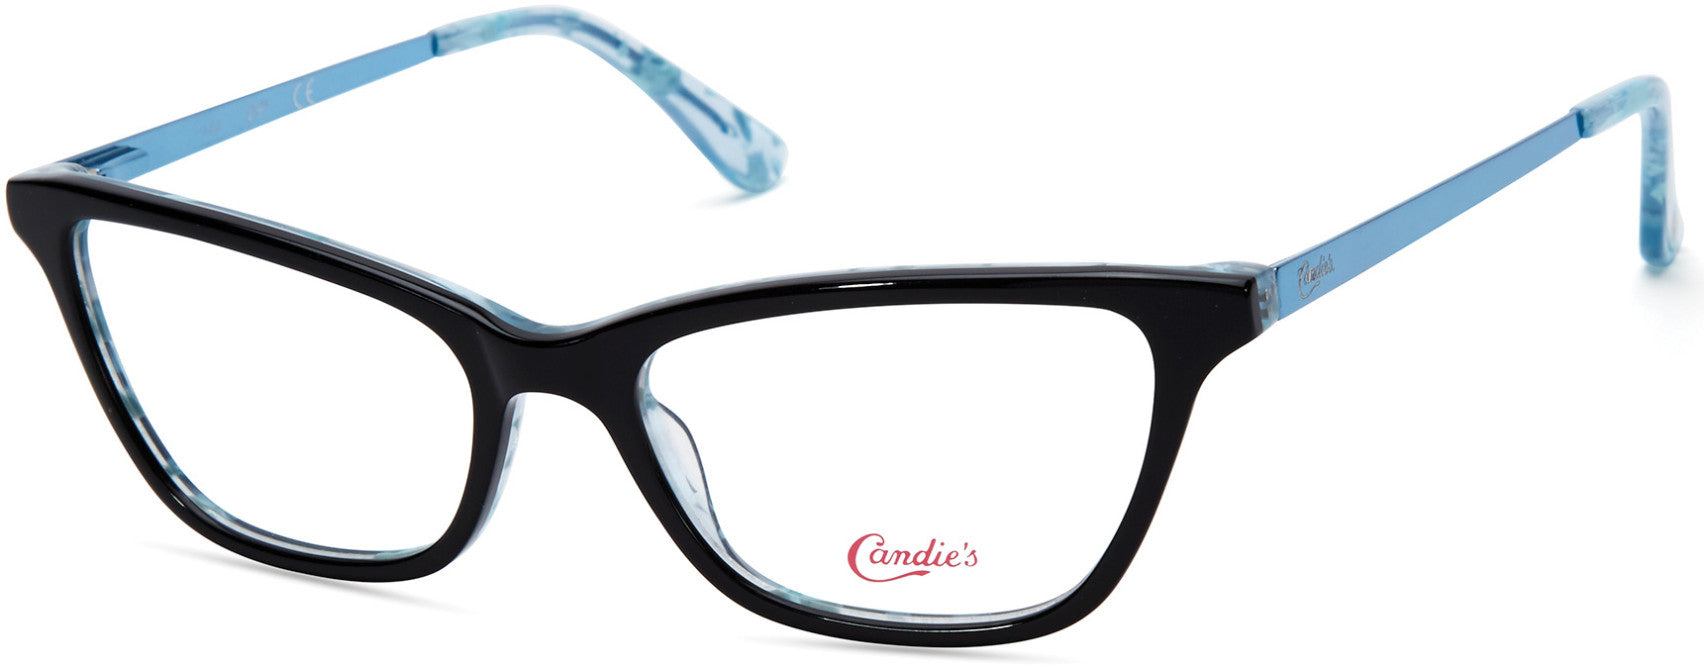 Candies CA0170 Geometric Eyeglasses 001-001 - Shiny Black